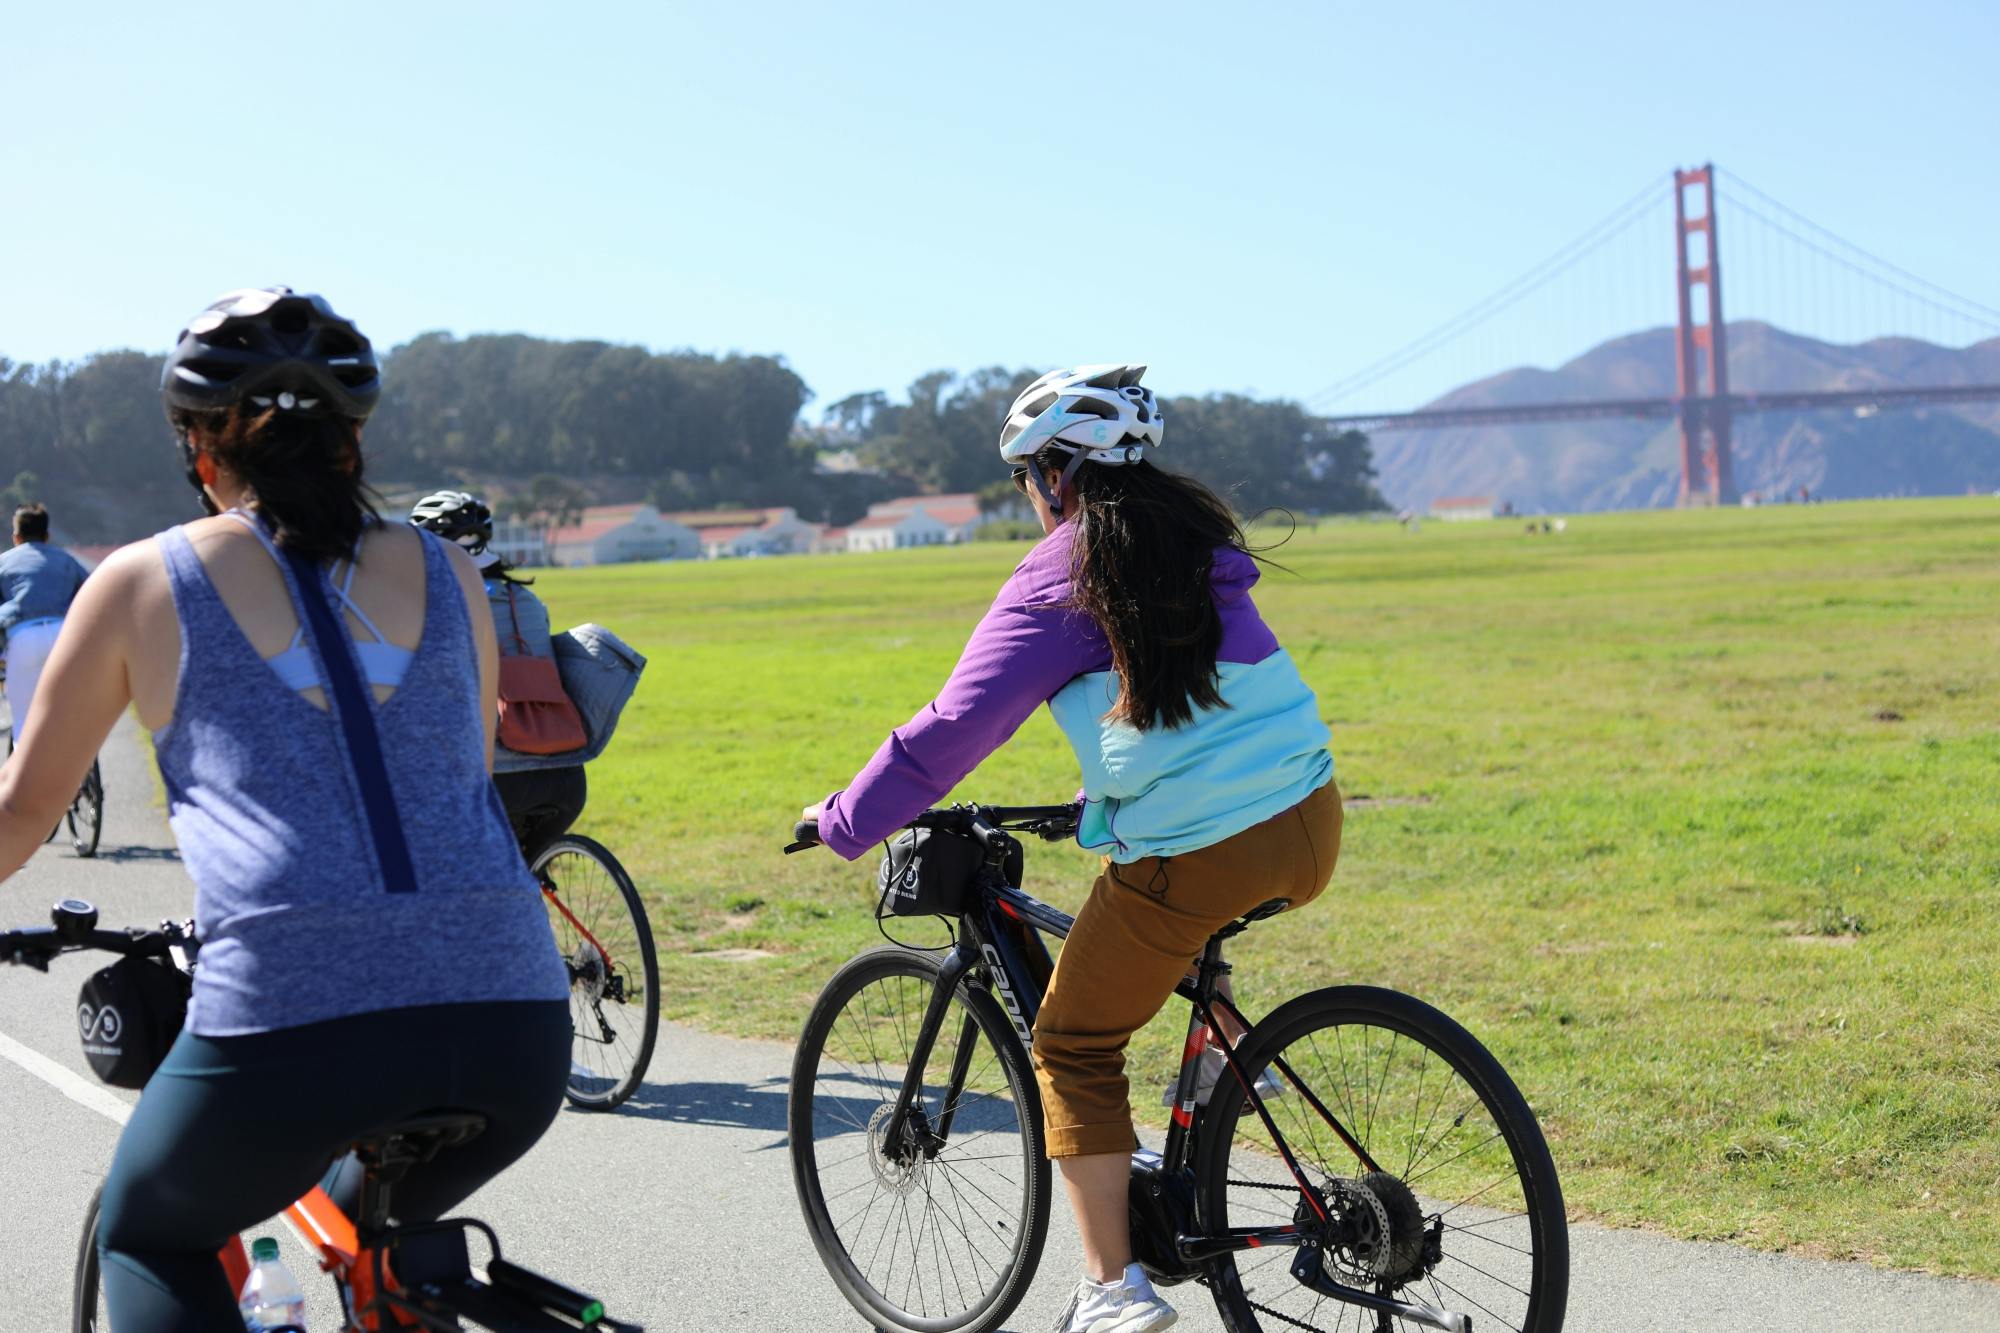 Punti salienti del tour guidato in bici del Golden Gate Park